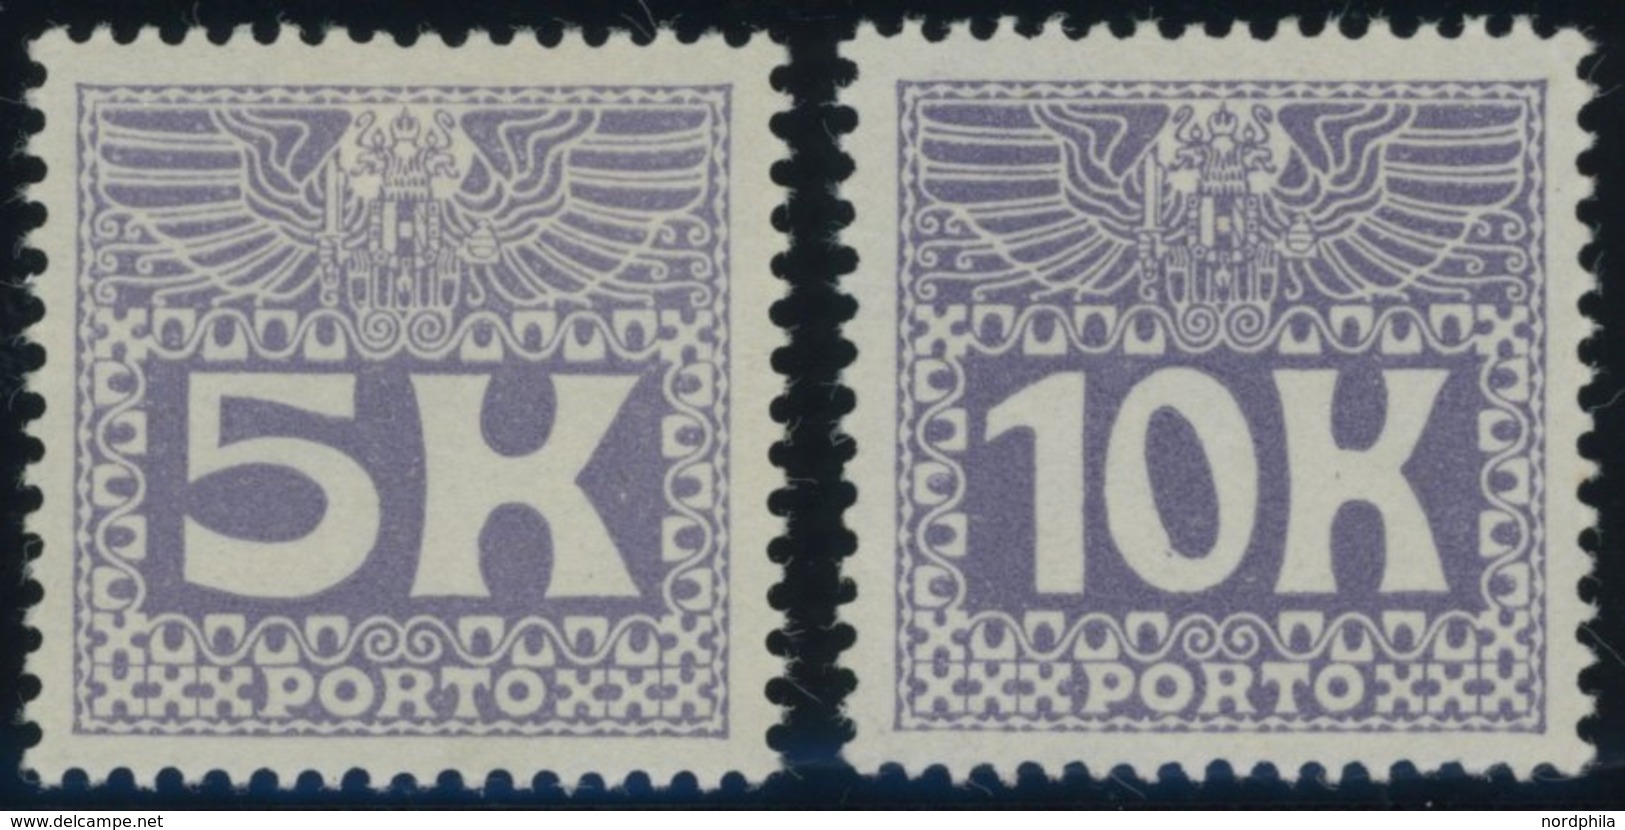 PORTOMARKEN P 45/6 *, 1911, 5 Und 10 Kr. Violettblau, Falzrest, Pracht, Mi. 400.- - Impuestos